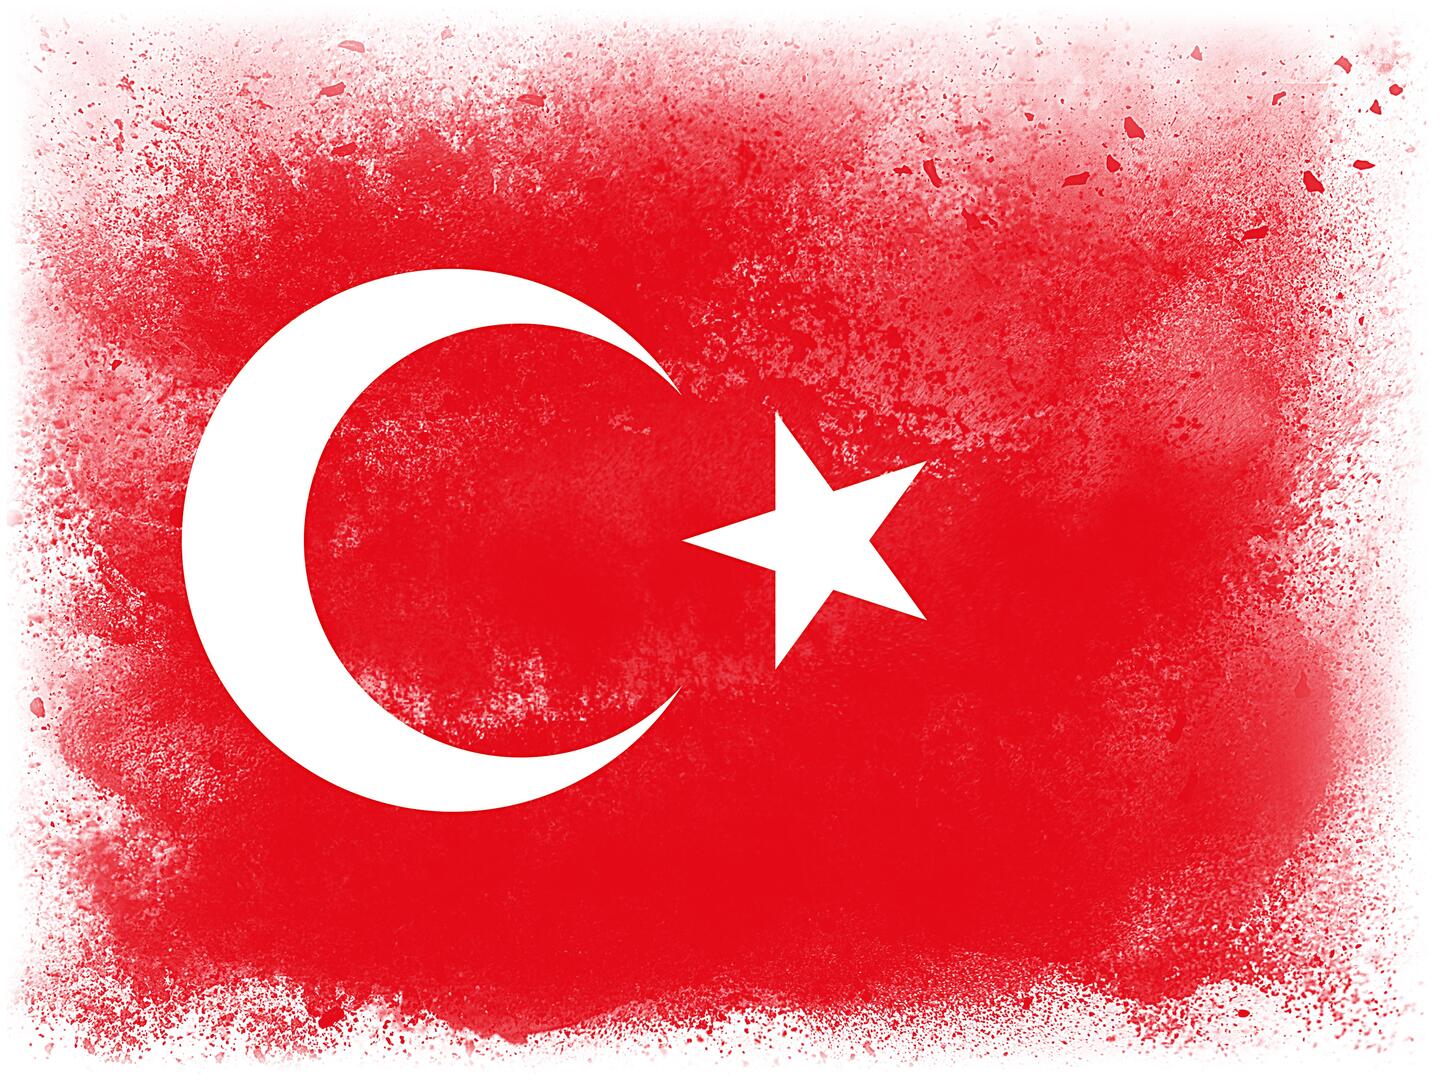 الجنسيات الأكثر شراء للعقارات في تركيا.. بينهم رعايا دولة عربية